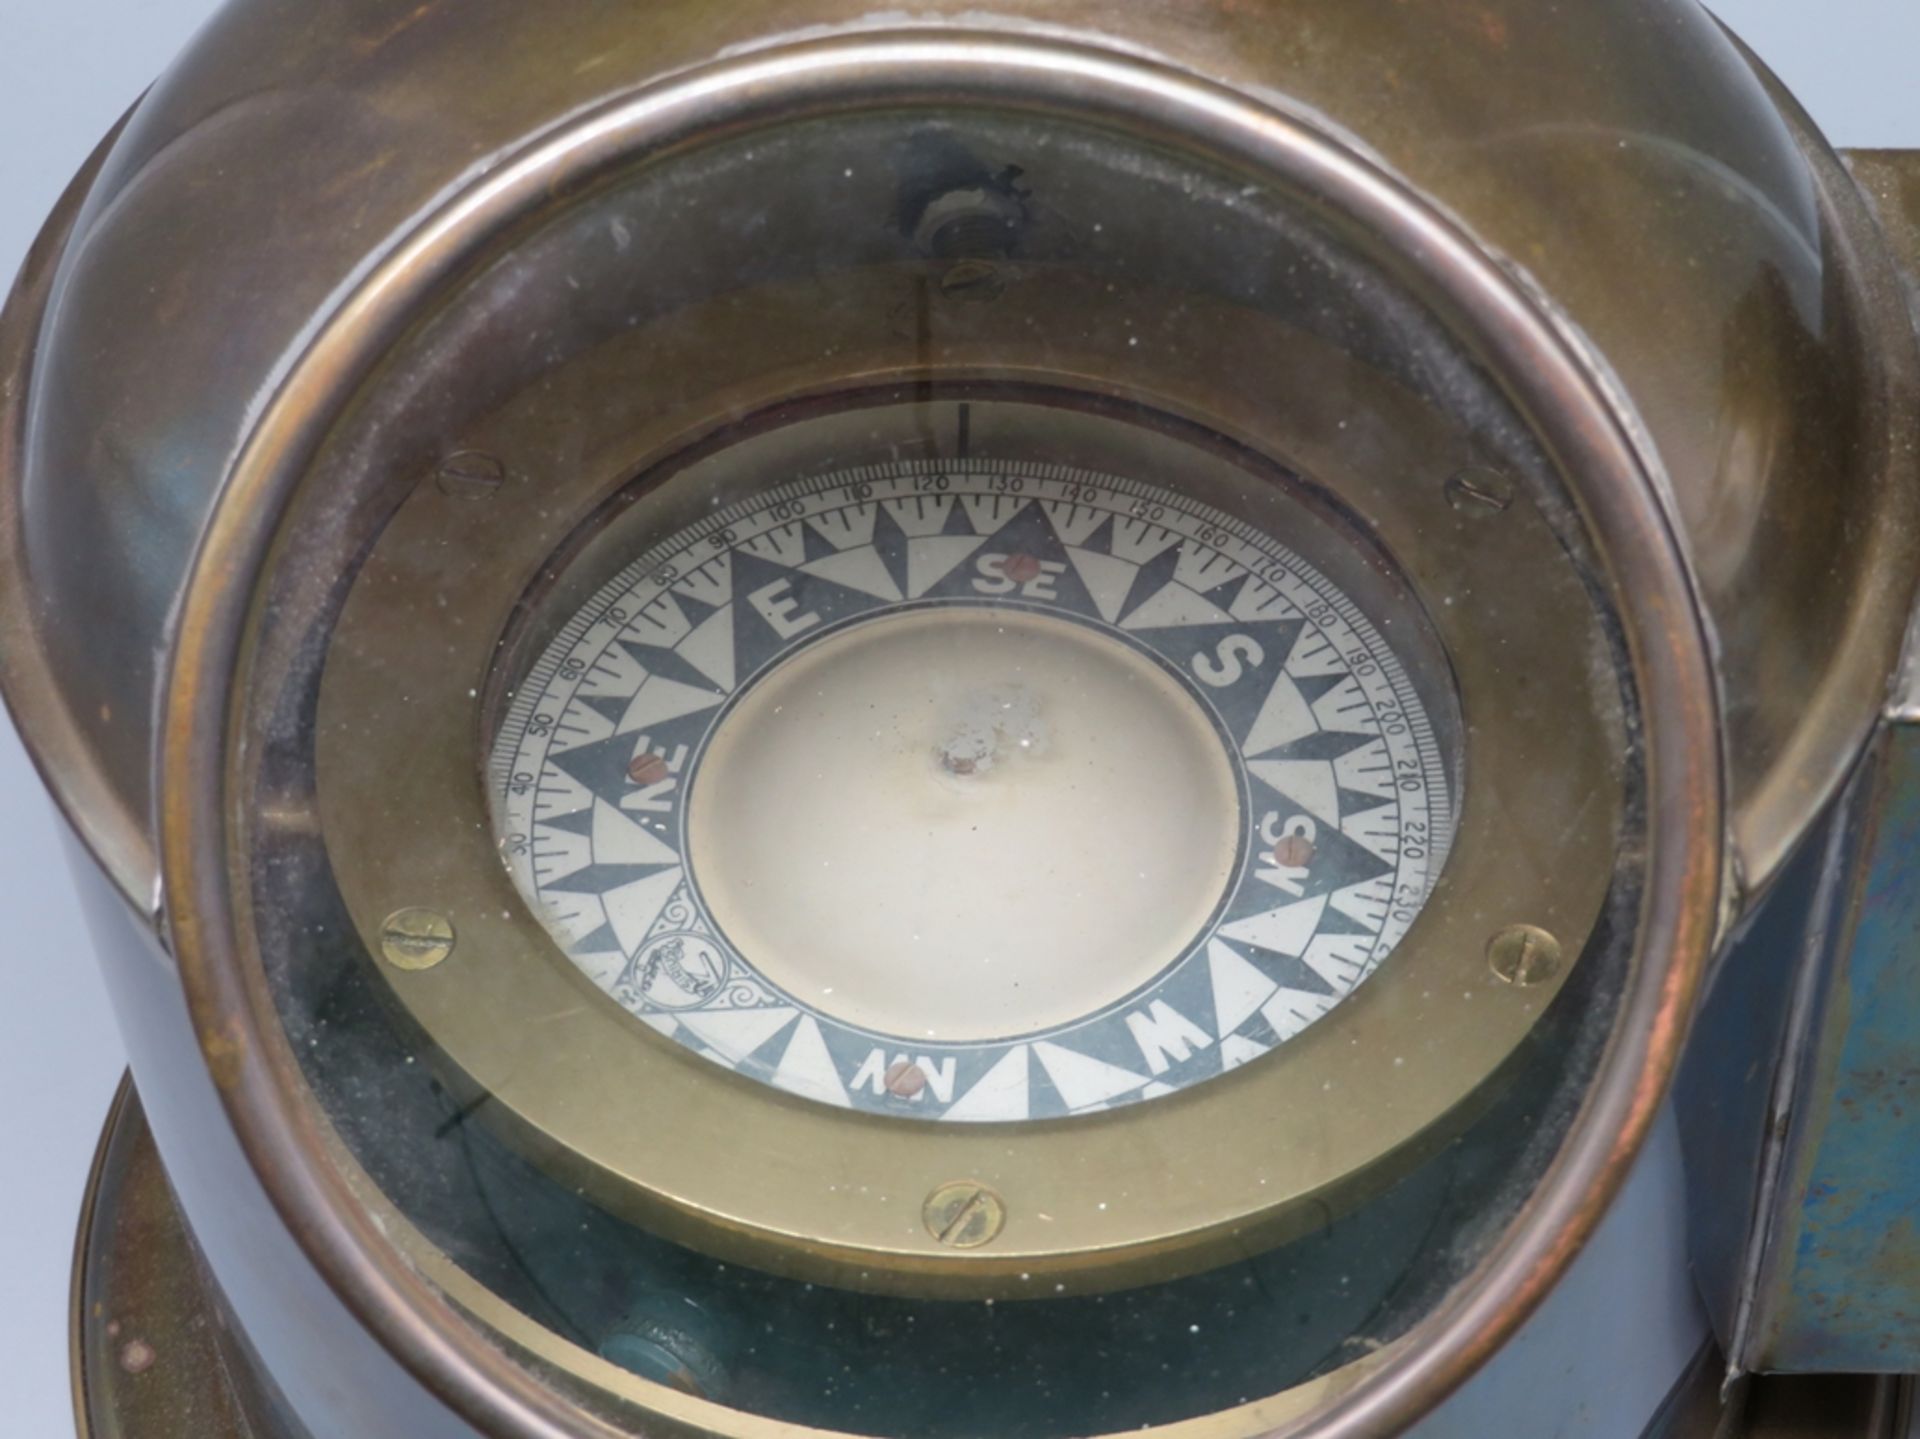 Schiffskompass, Sirius, 1. Hälfte 20. Jahrhundert, Gehäuse Messing, intakt, h 25 cm, d 28 cm. - Bild 2 aus 2